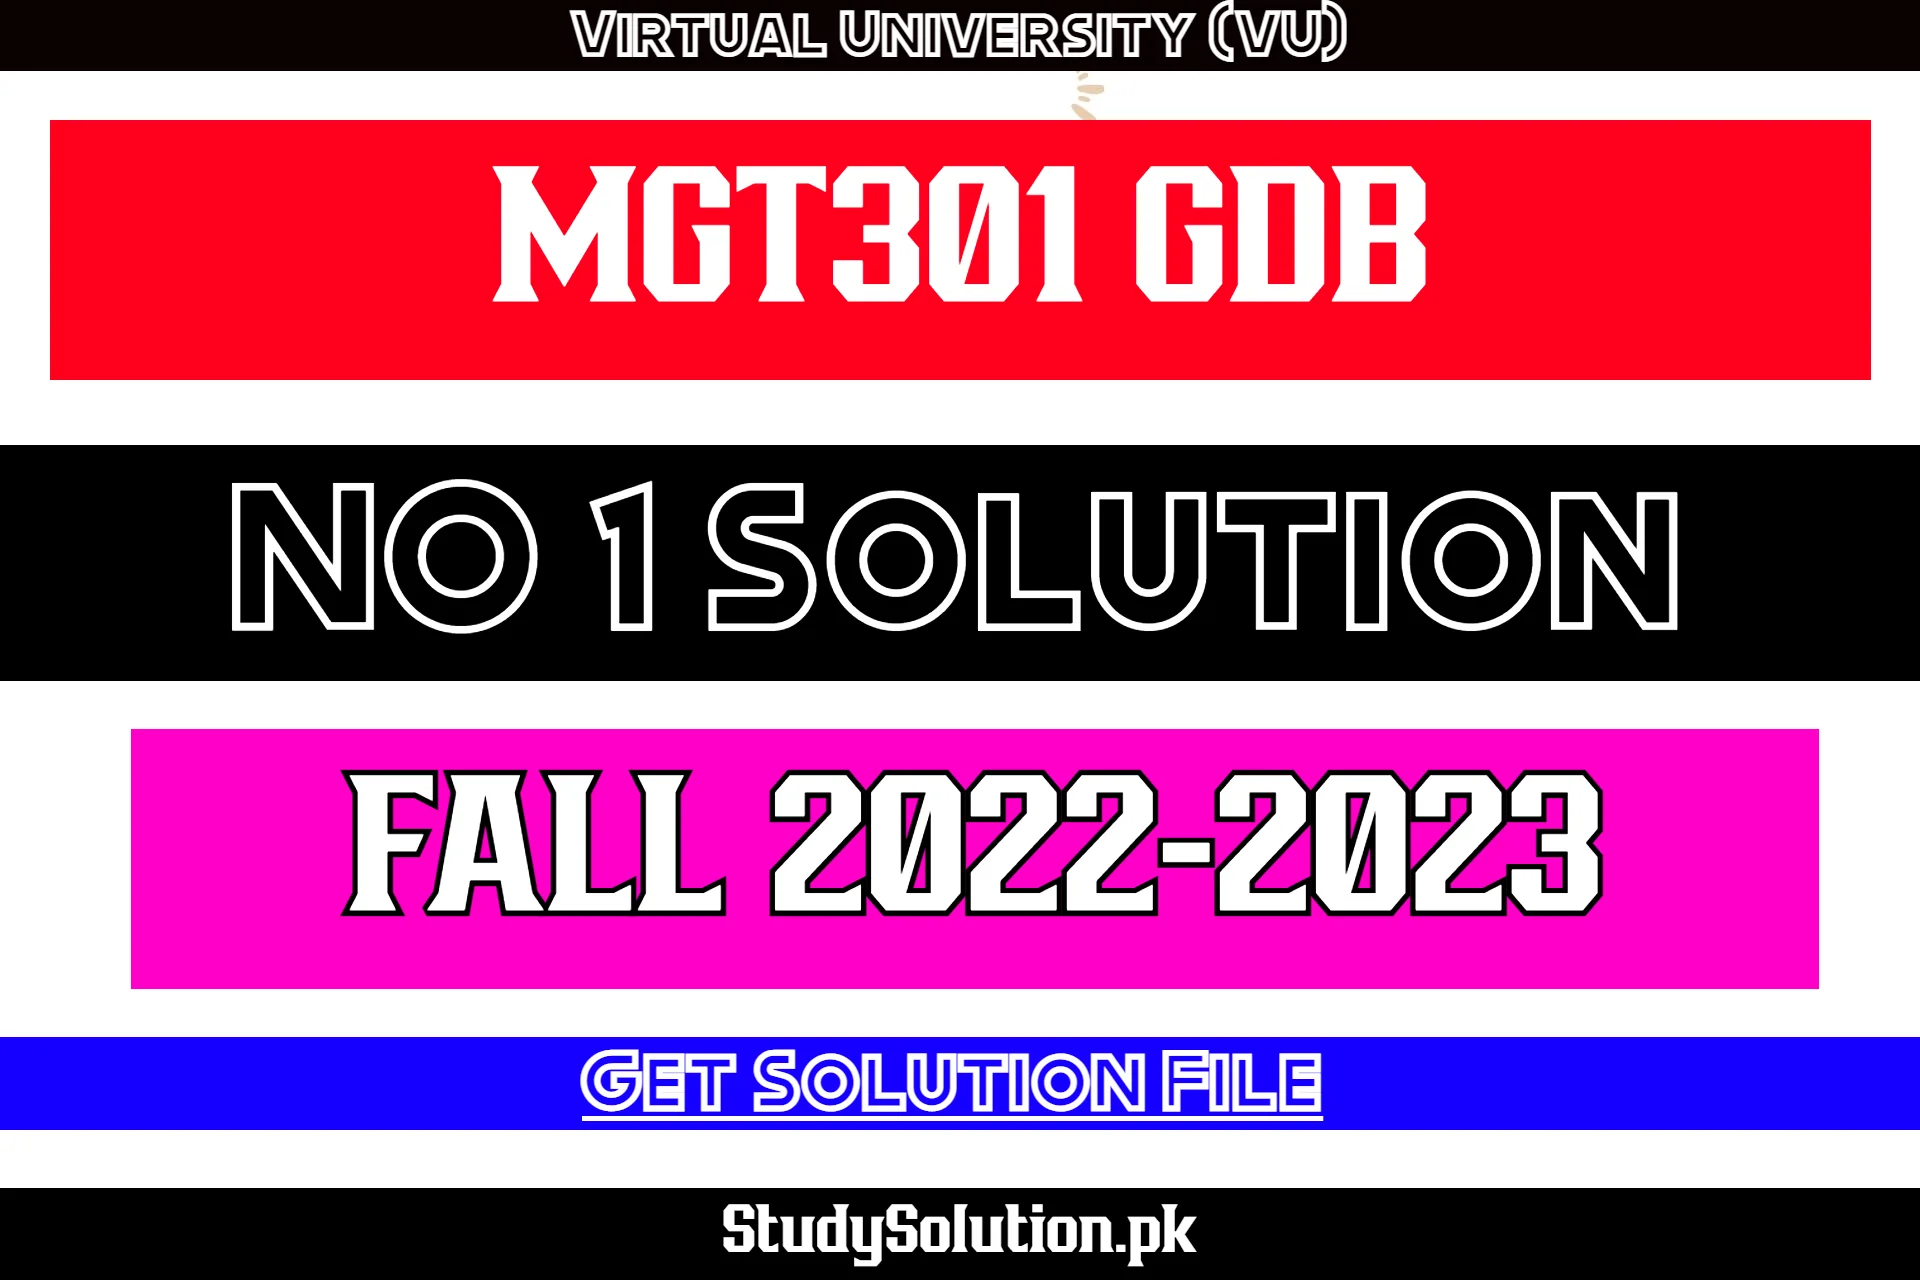 MGT301 GDB No 1 Solution Fall 2022